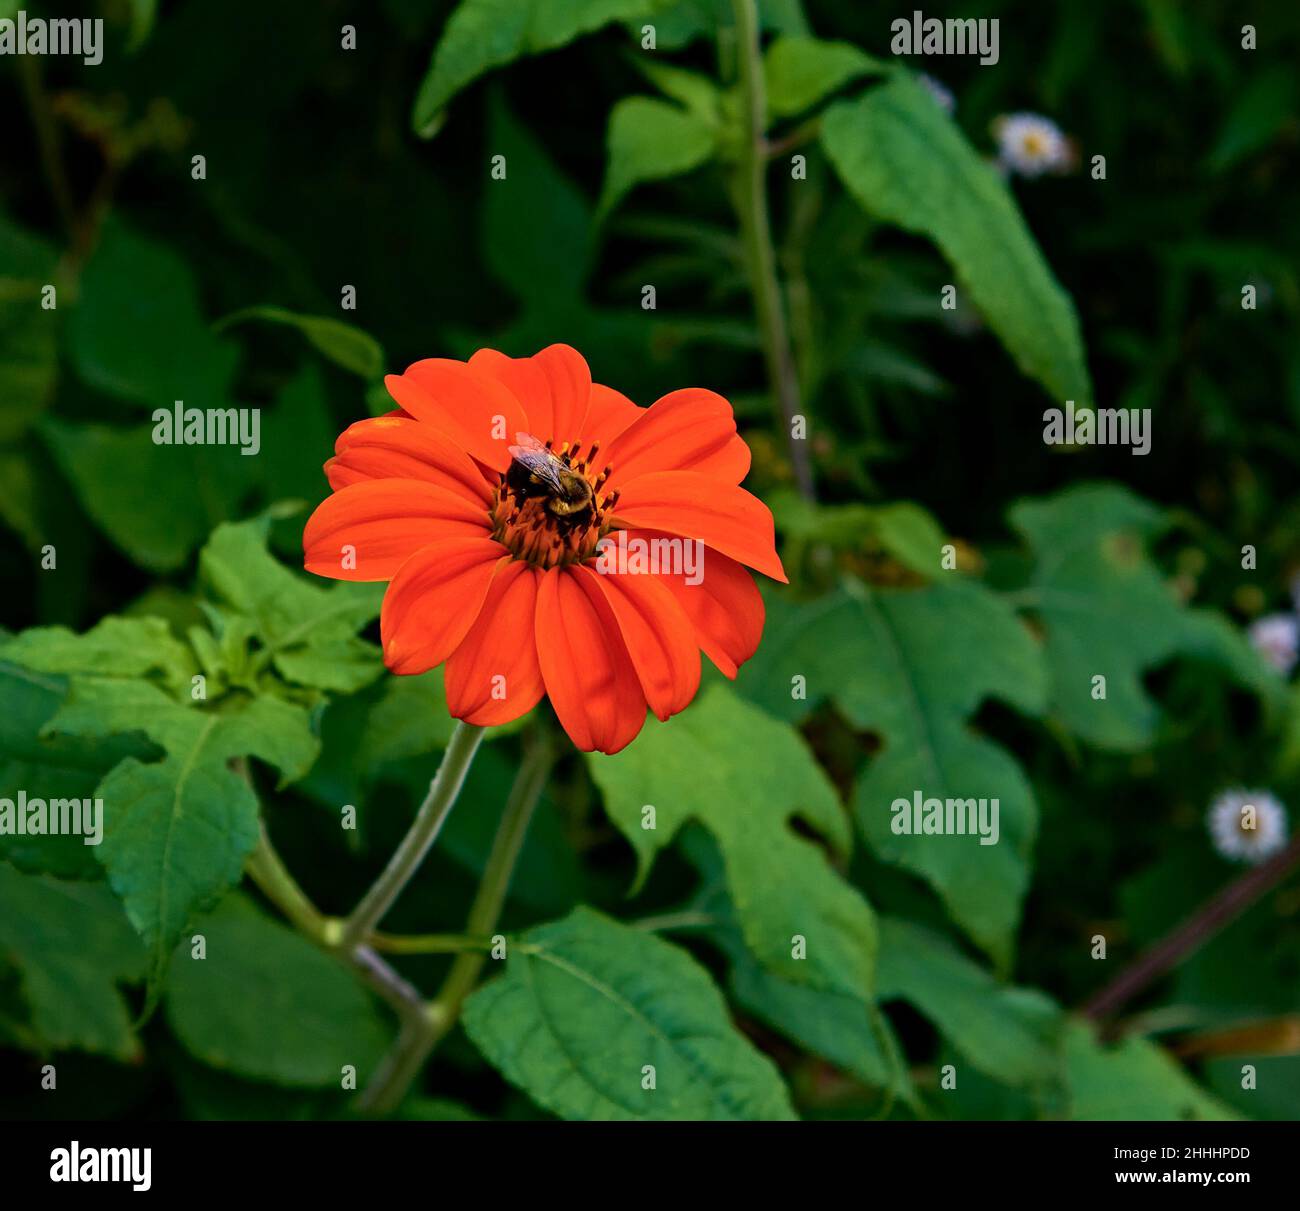 Girasoli messicani, con enormi e vibranti fiori d'arancio. E 'anche popolare per attirare colibrì, farfalle e api. La piccola ape su di esso. Foto Stock